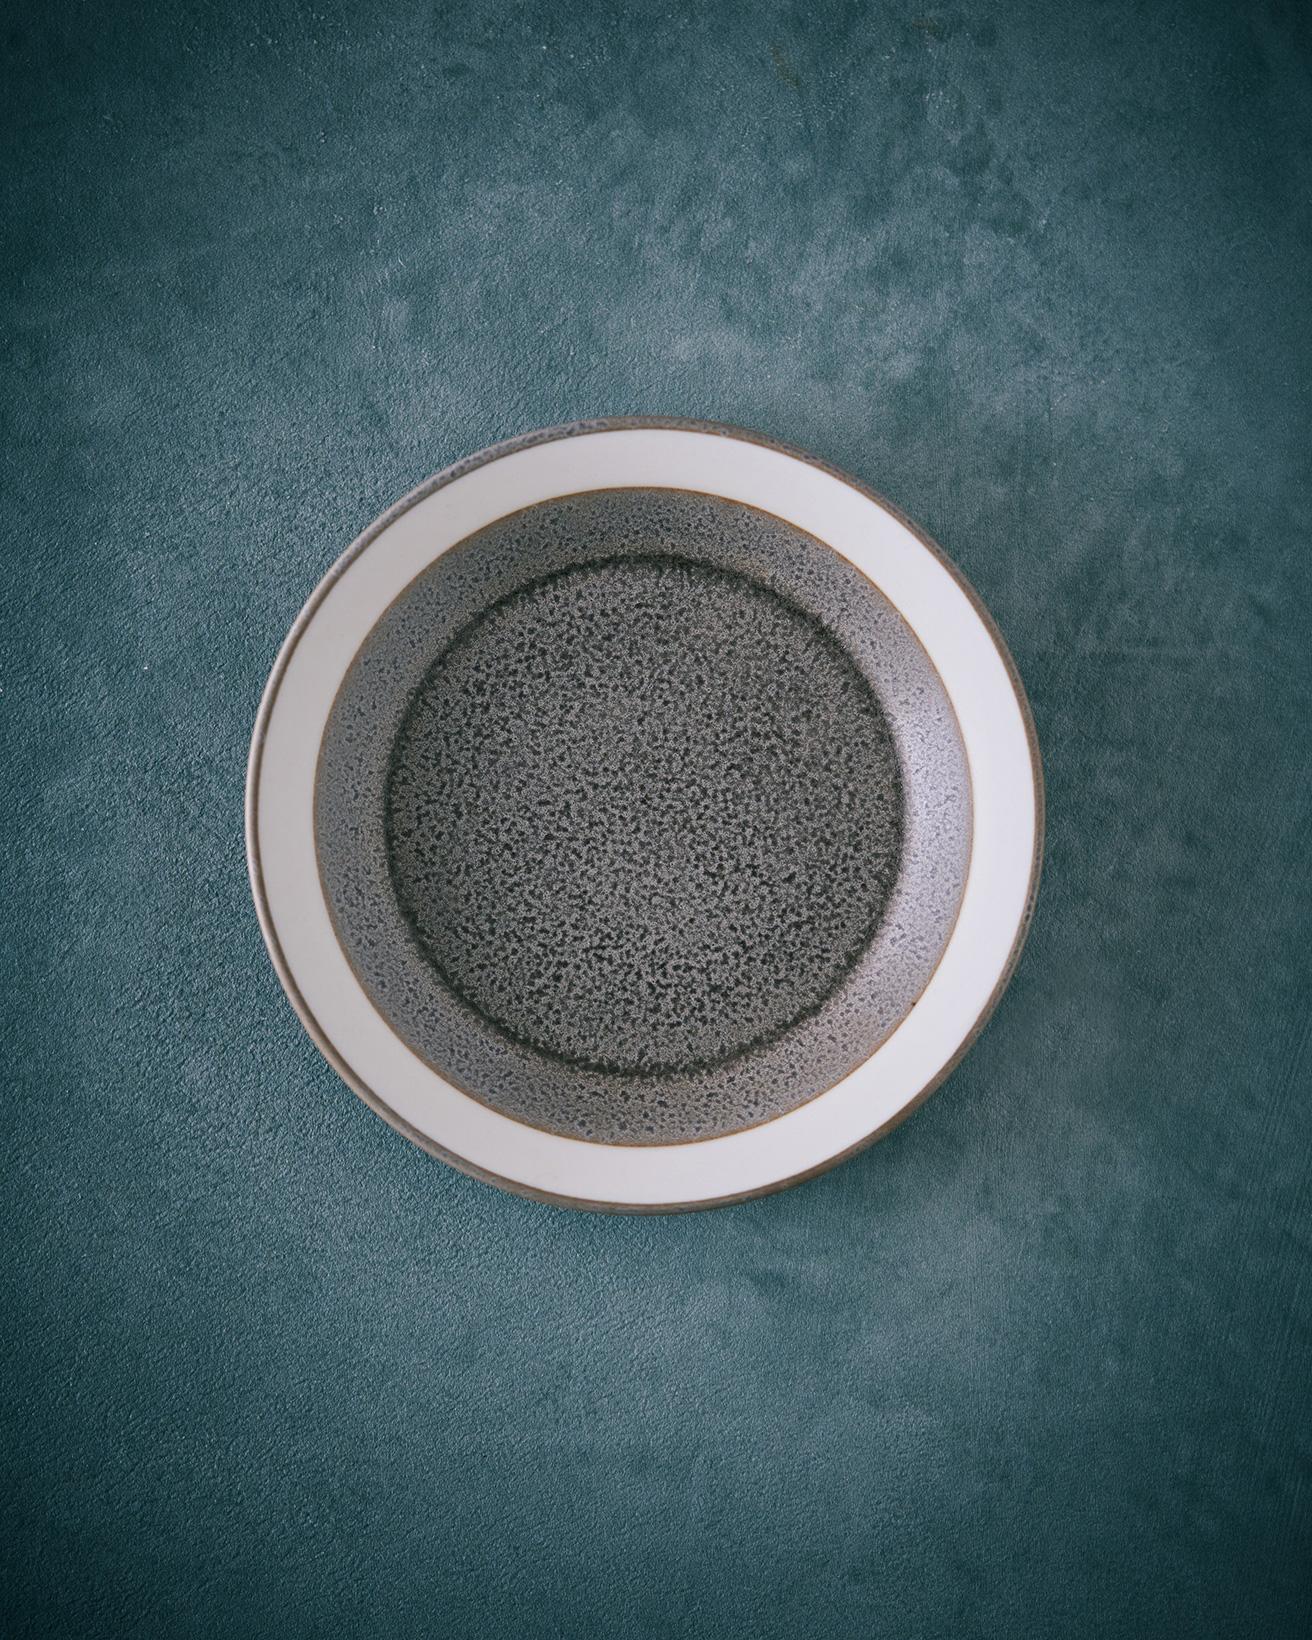 イイホシユミコさんによるデザインシリーズと木村硝子店がコラボした「dishes -ディシィーズ-」シリーズの豆皿。高台のないフラットな形状で、盛り付けた料理が映えるように設計されています。表参道で購入しました。